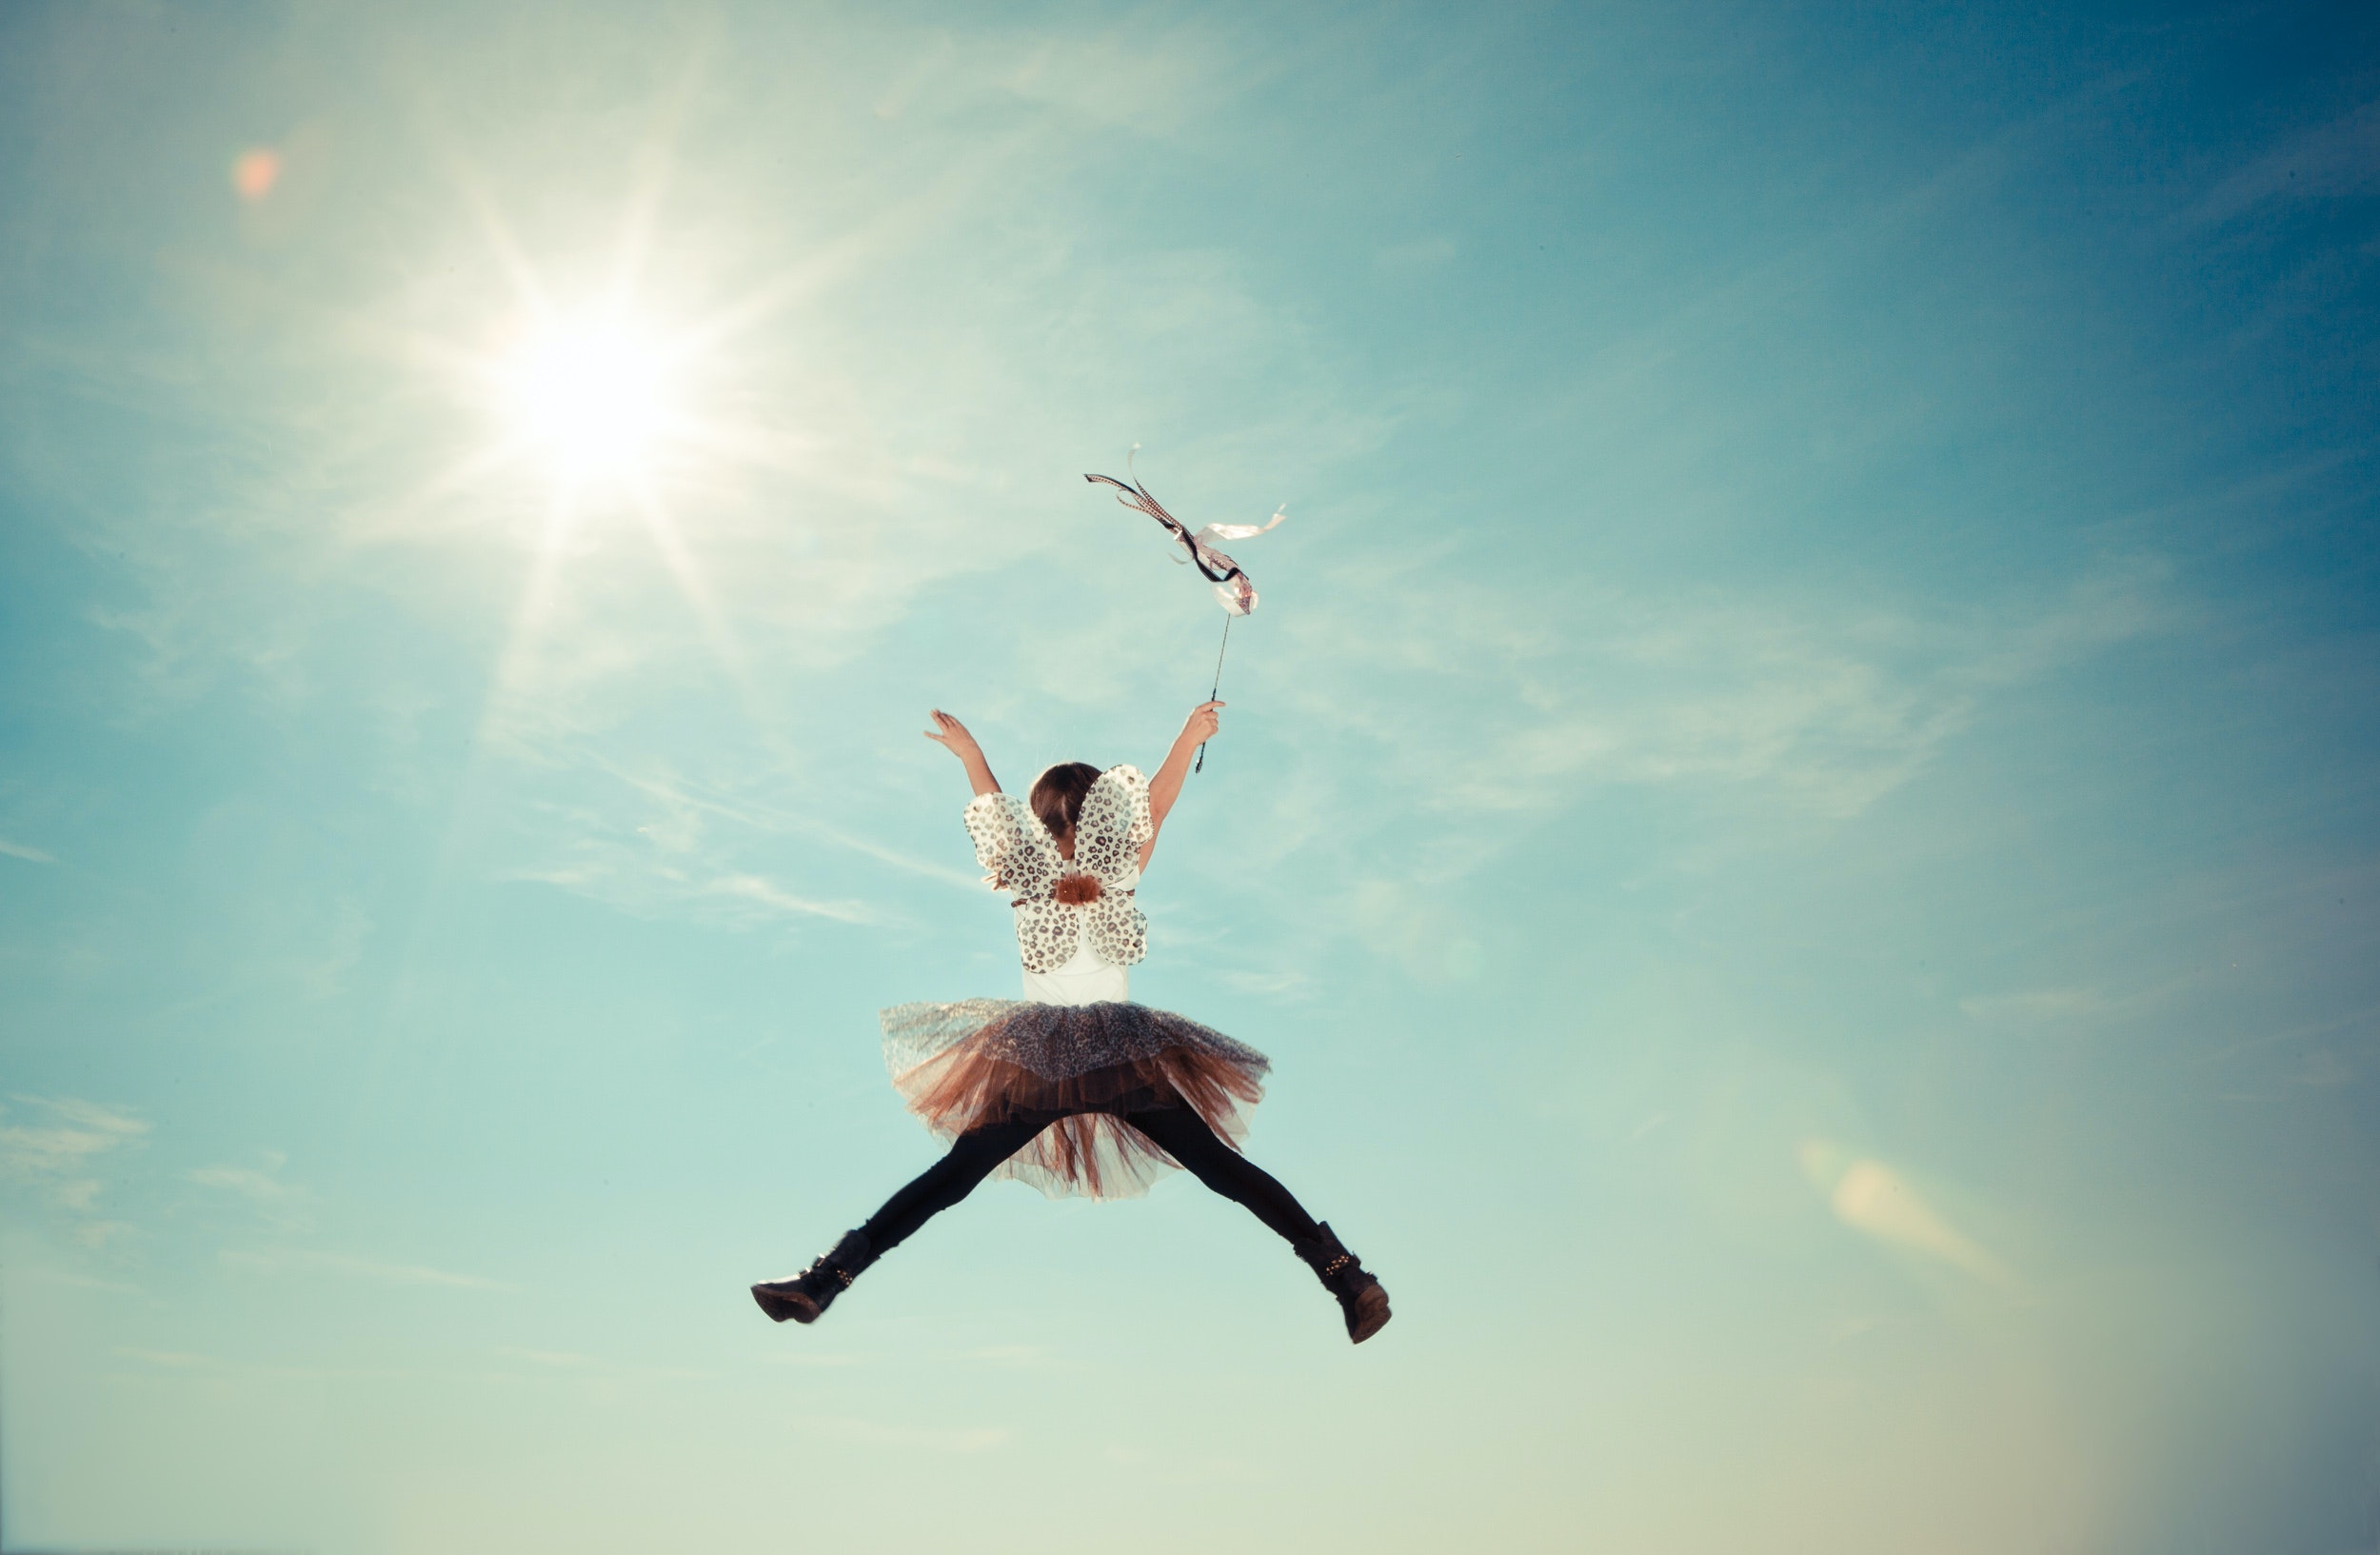 Weibliche Person springt in die Luft vor einem blauen Himmel und Sonne. Sie ist von hinten zu sehen und spreizt die arme und Bein von sich um eine X zu formen.